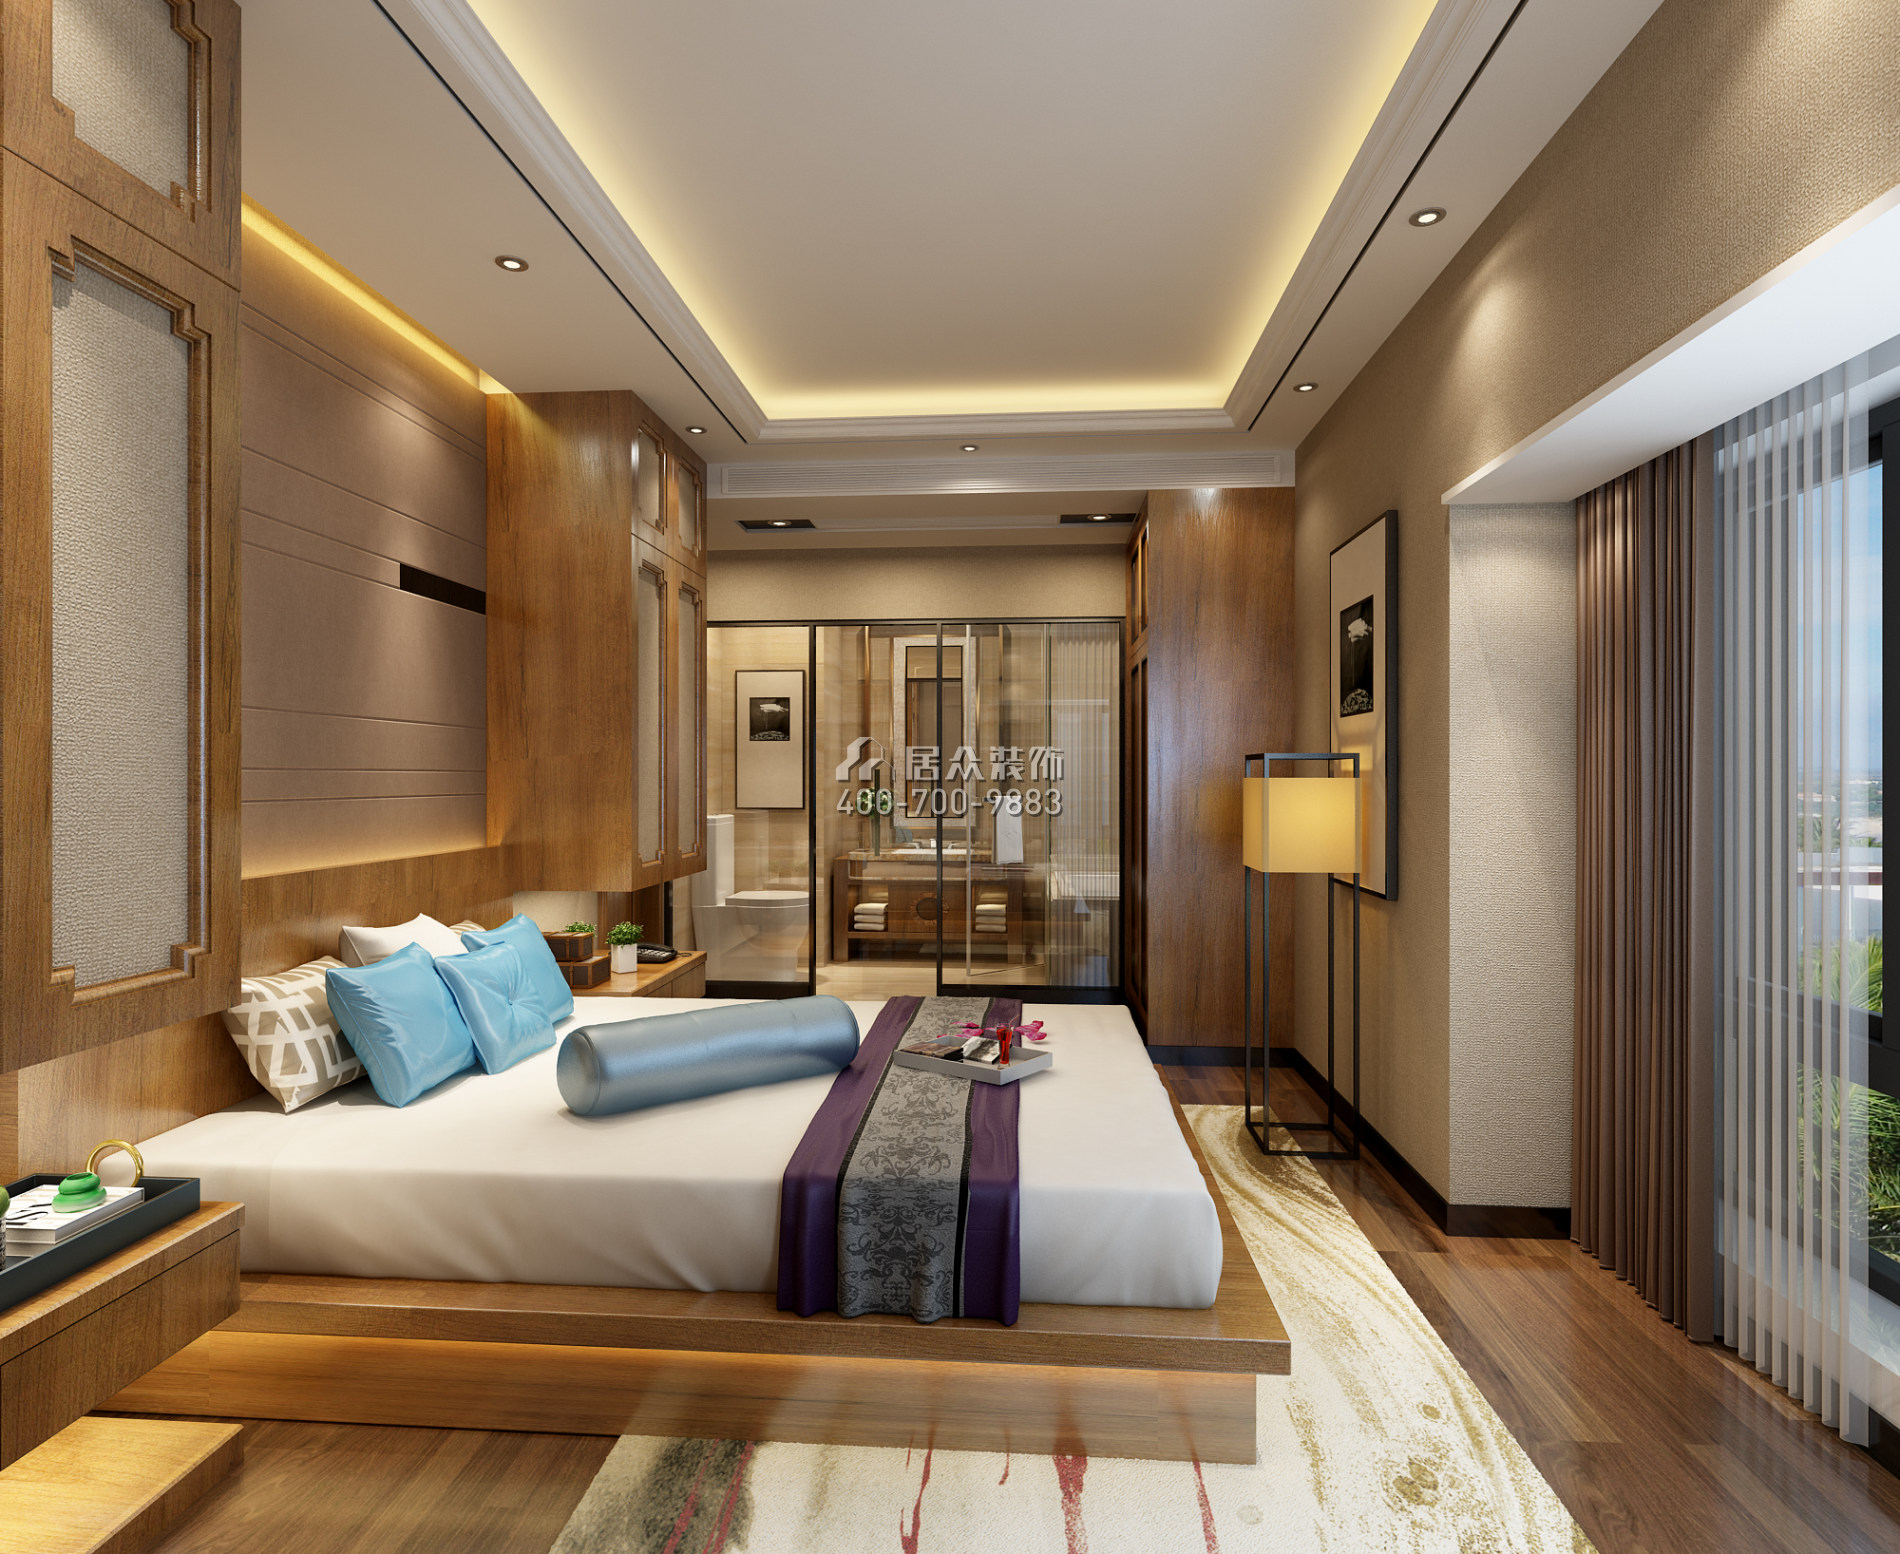 东海花园二期117平方米中式风格平层户型卧室装修效果图